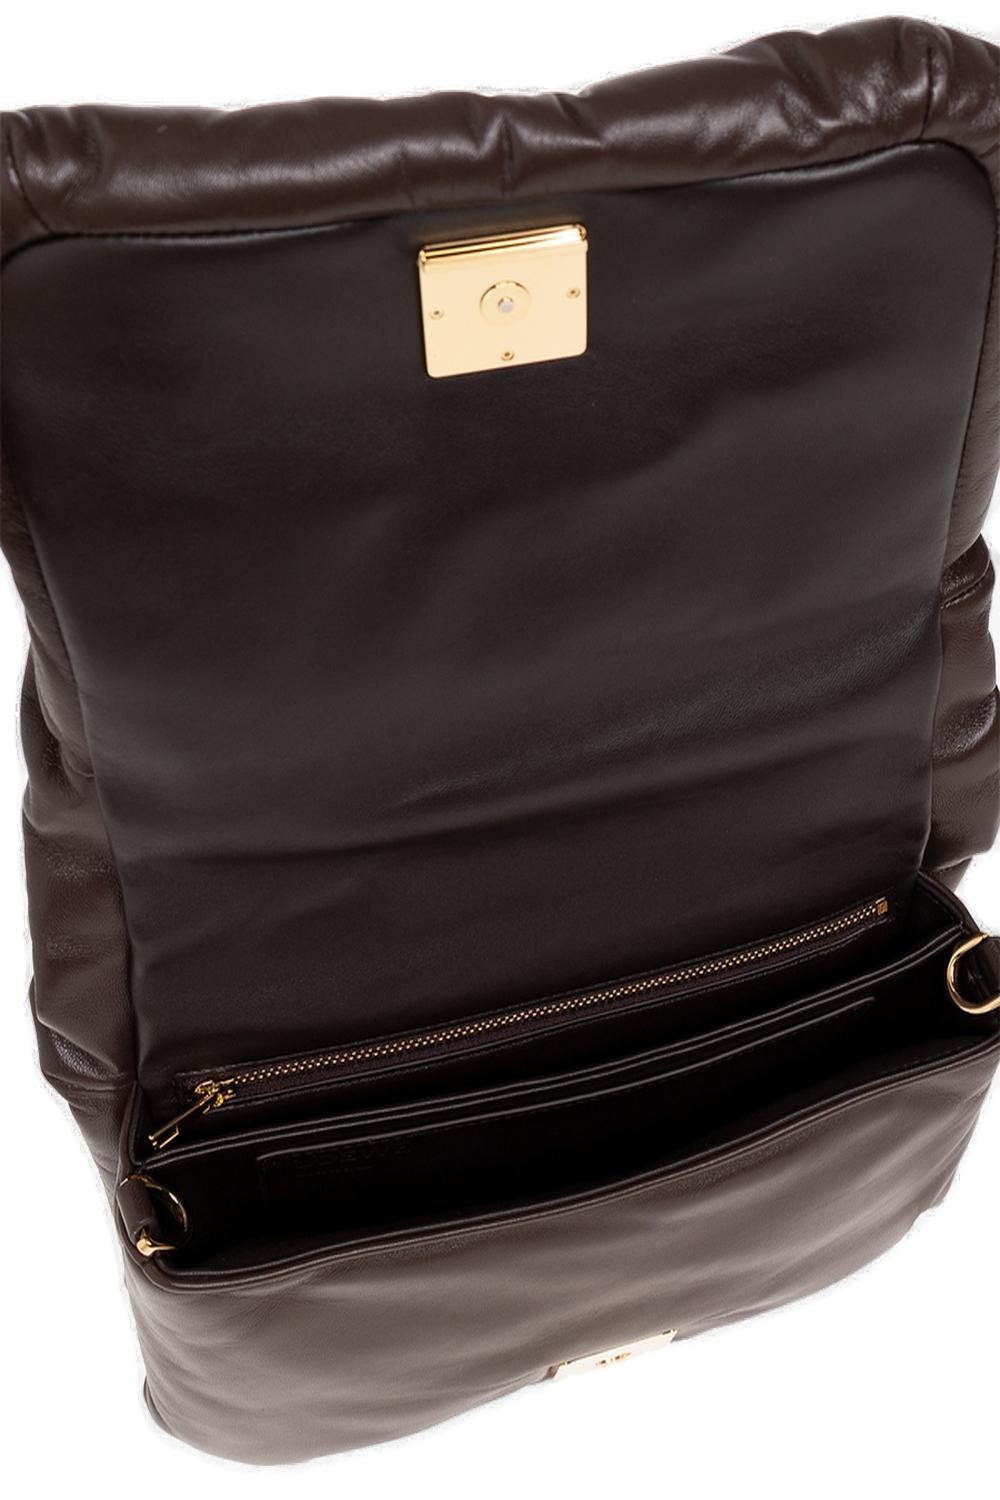 Loewe Goya Puffer Chained Shoulder Bag